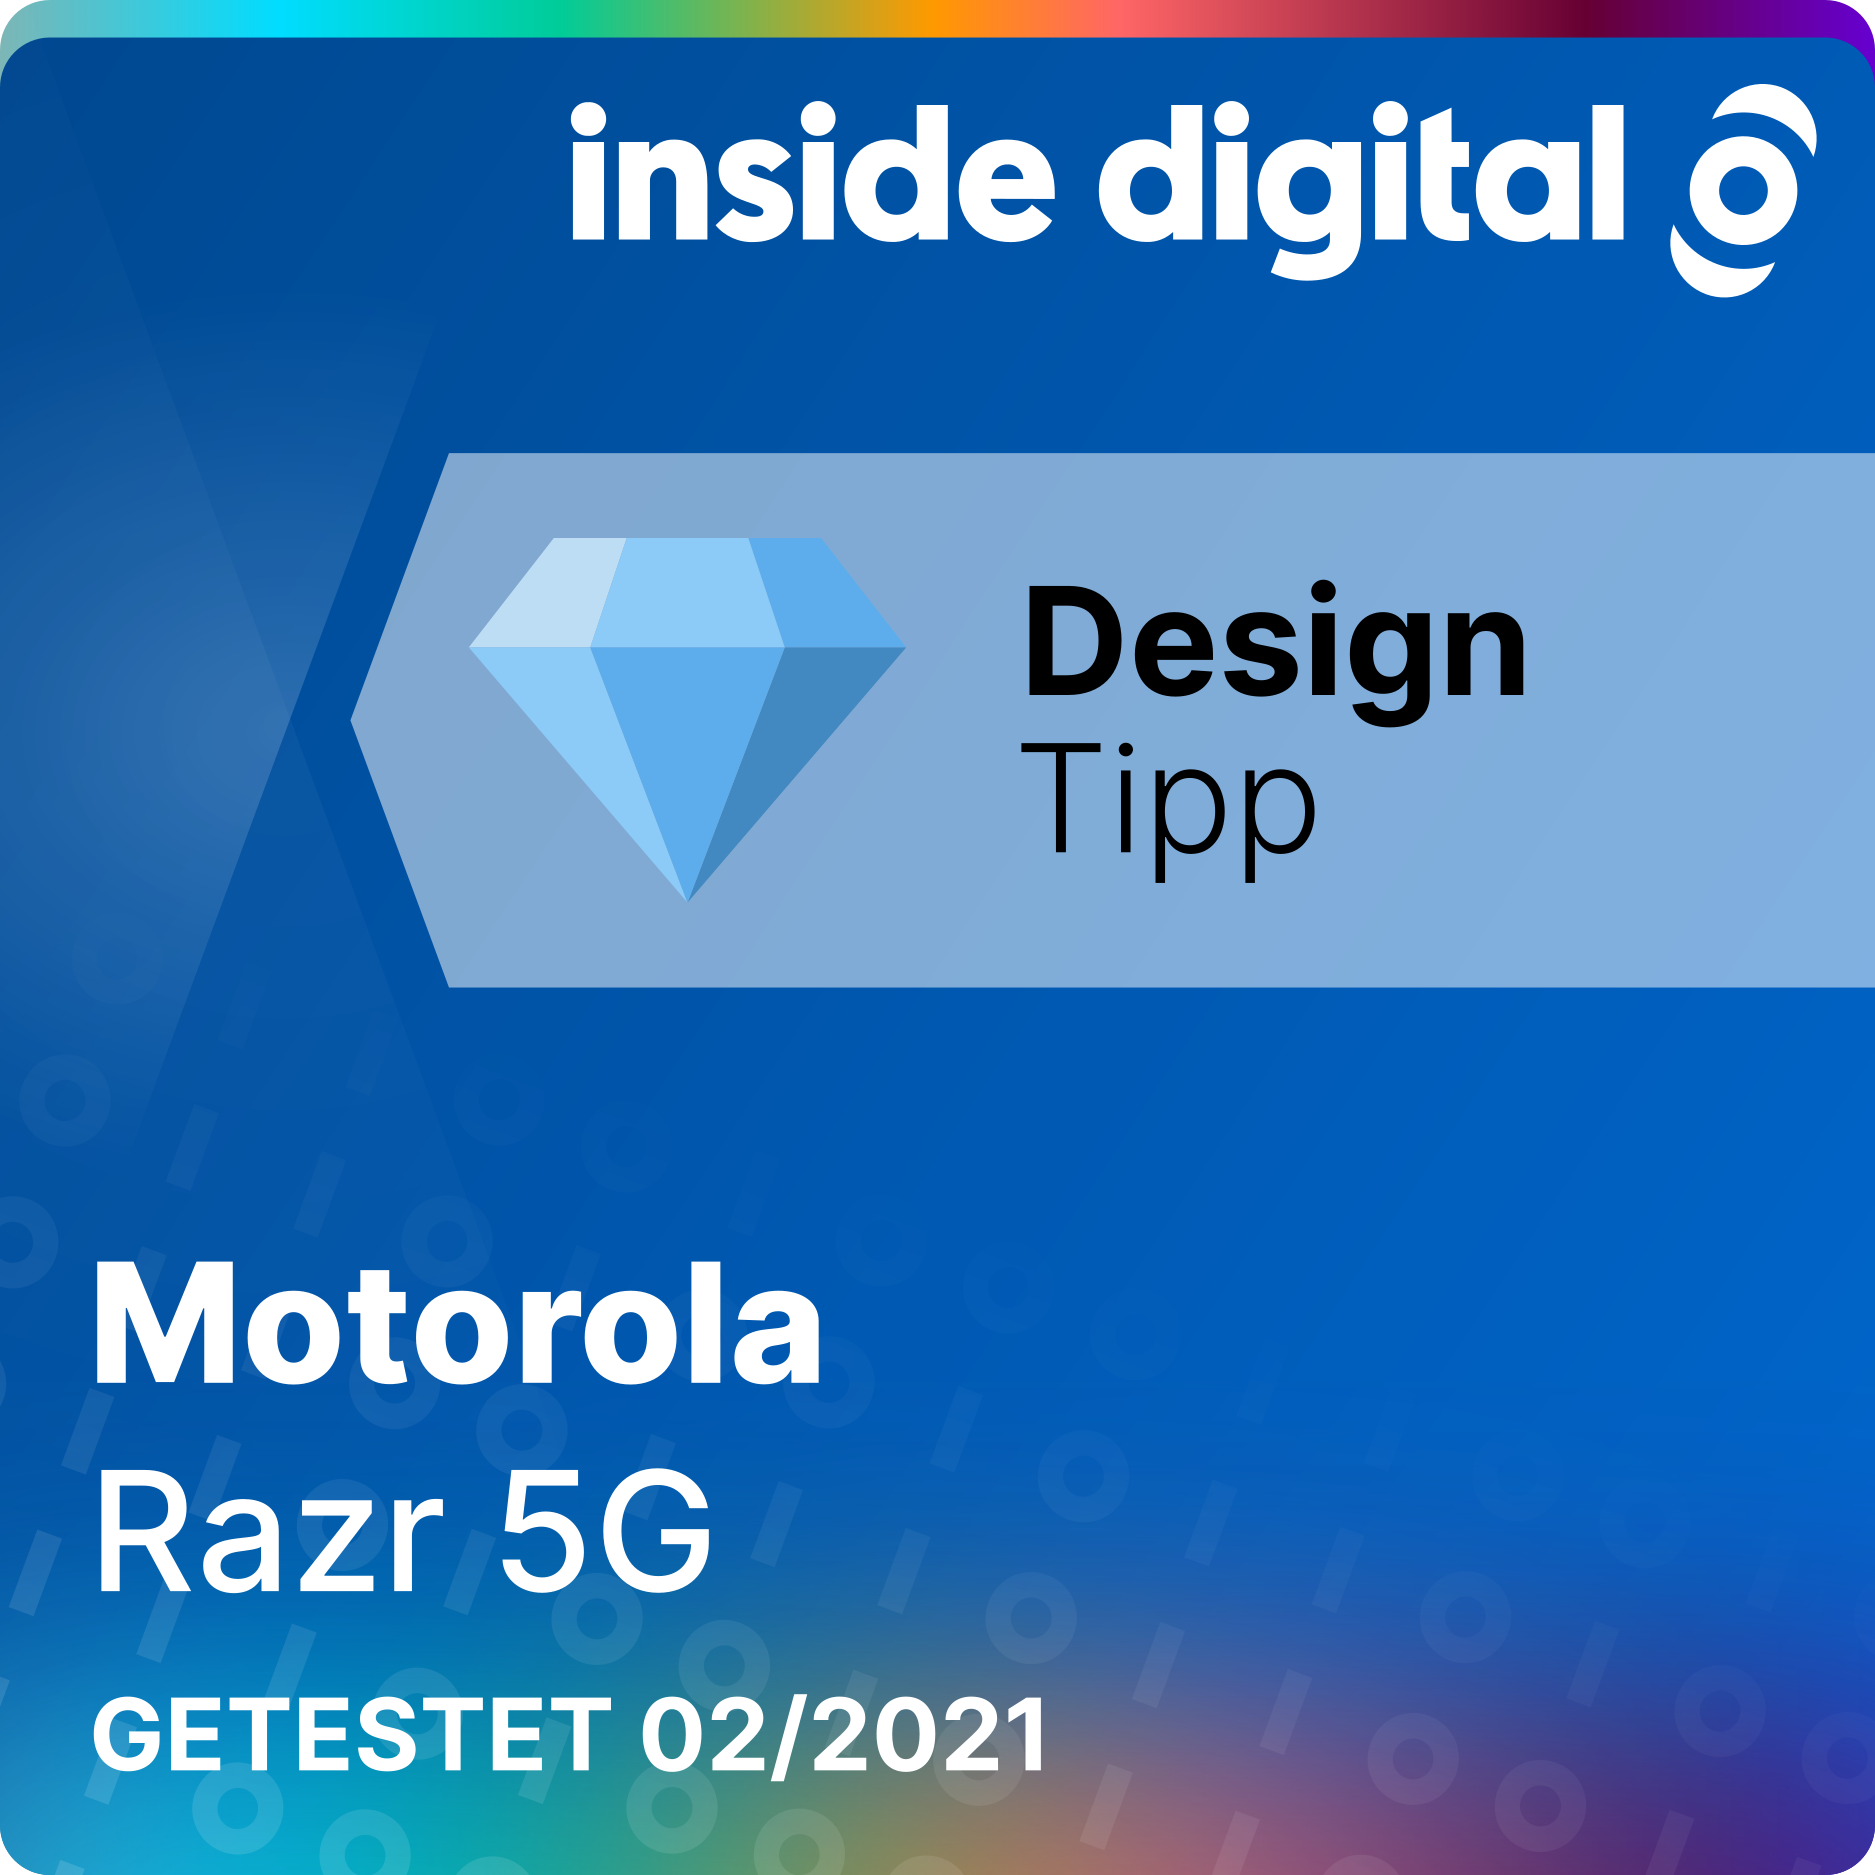 Das Motorola Razr 5G ist aufgrund des innovativen Klappmechanismus ein Design Tipp